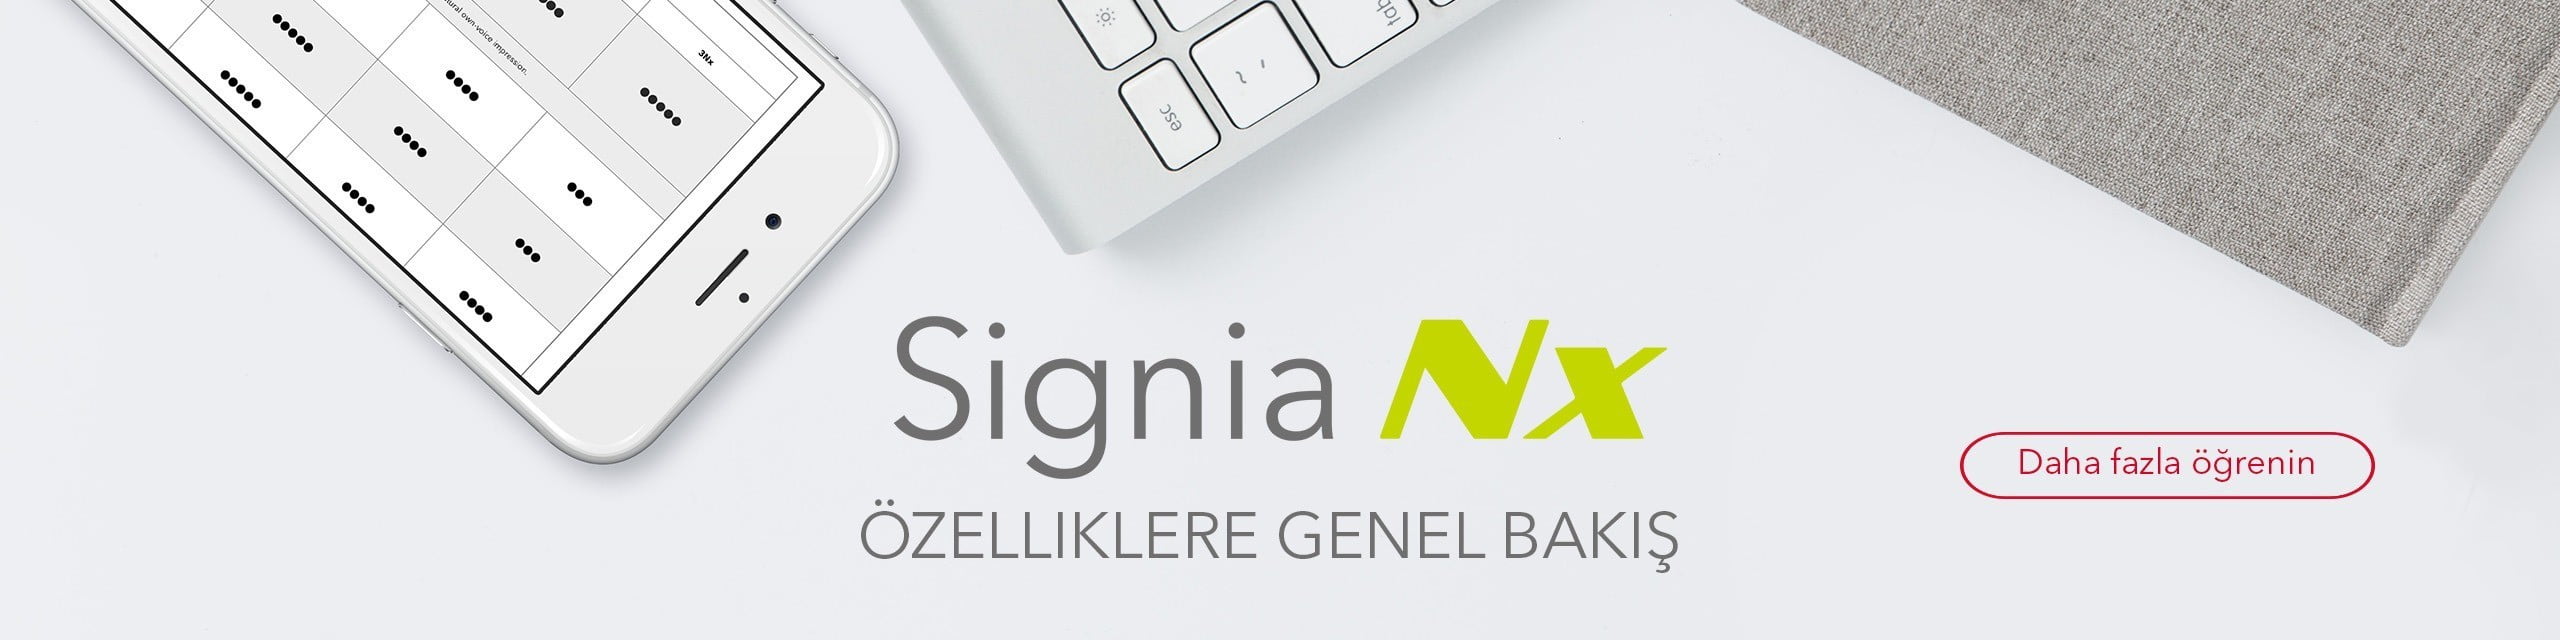 Signia NX TR ozellikler - Pure 312 Nx